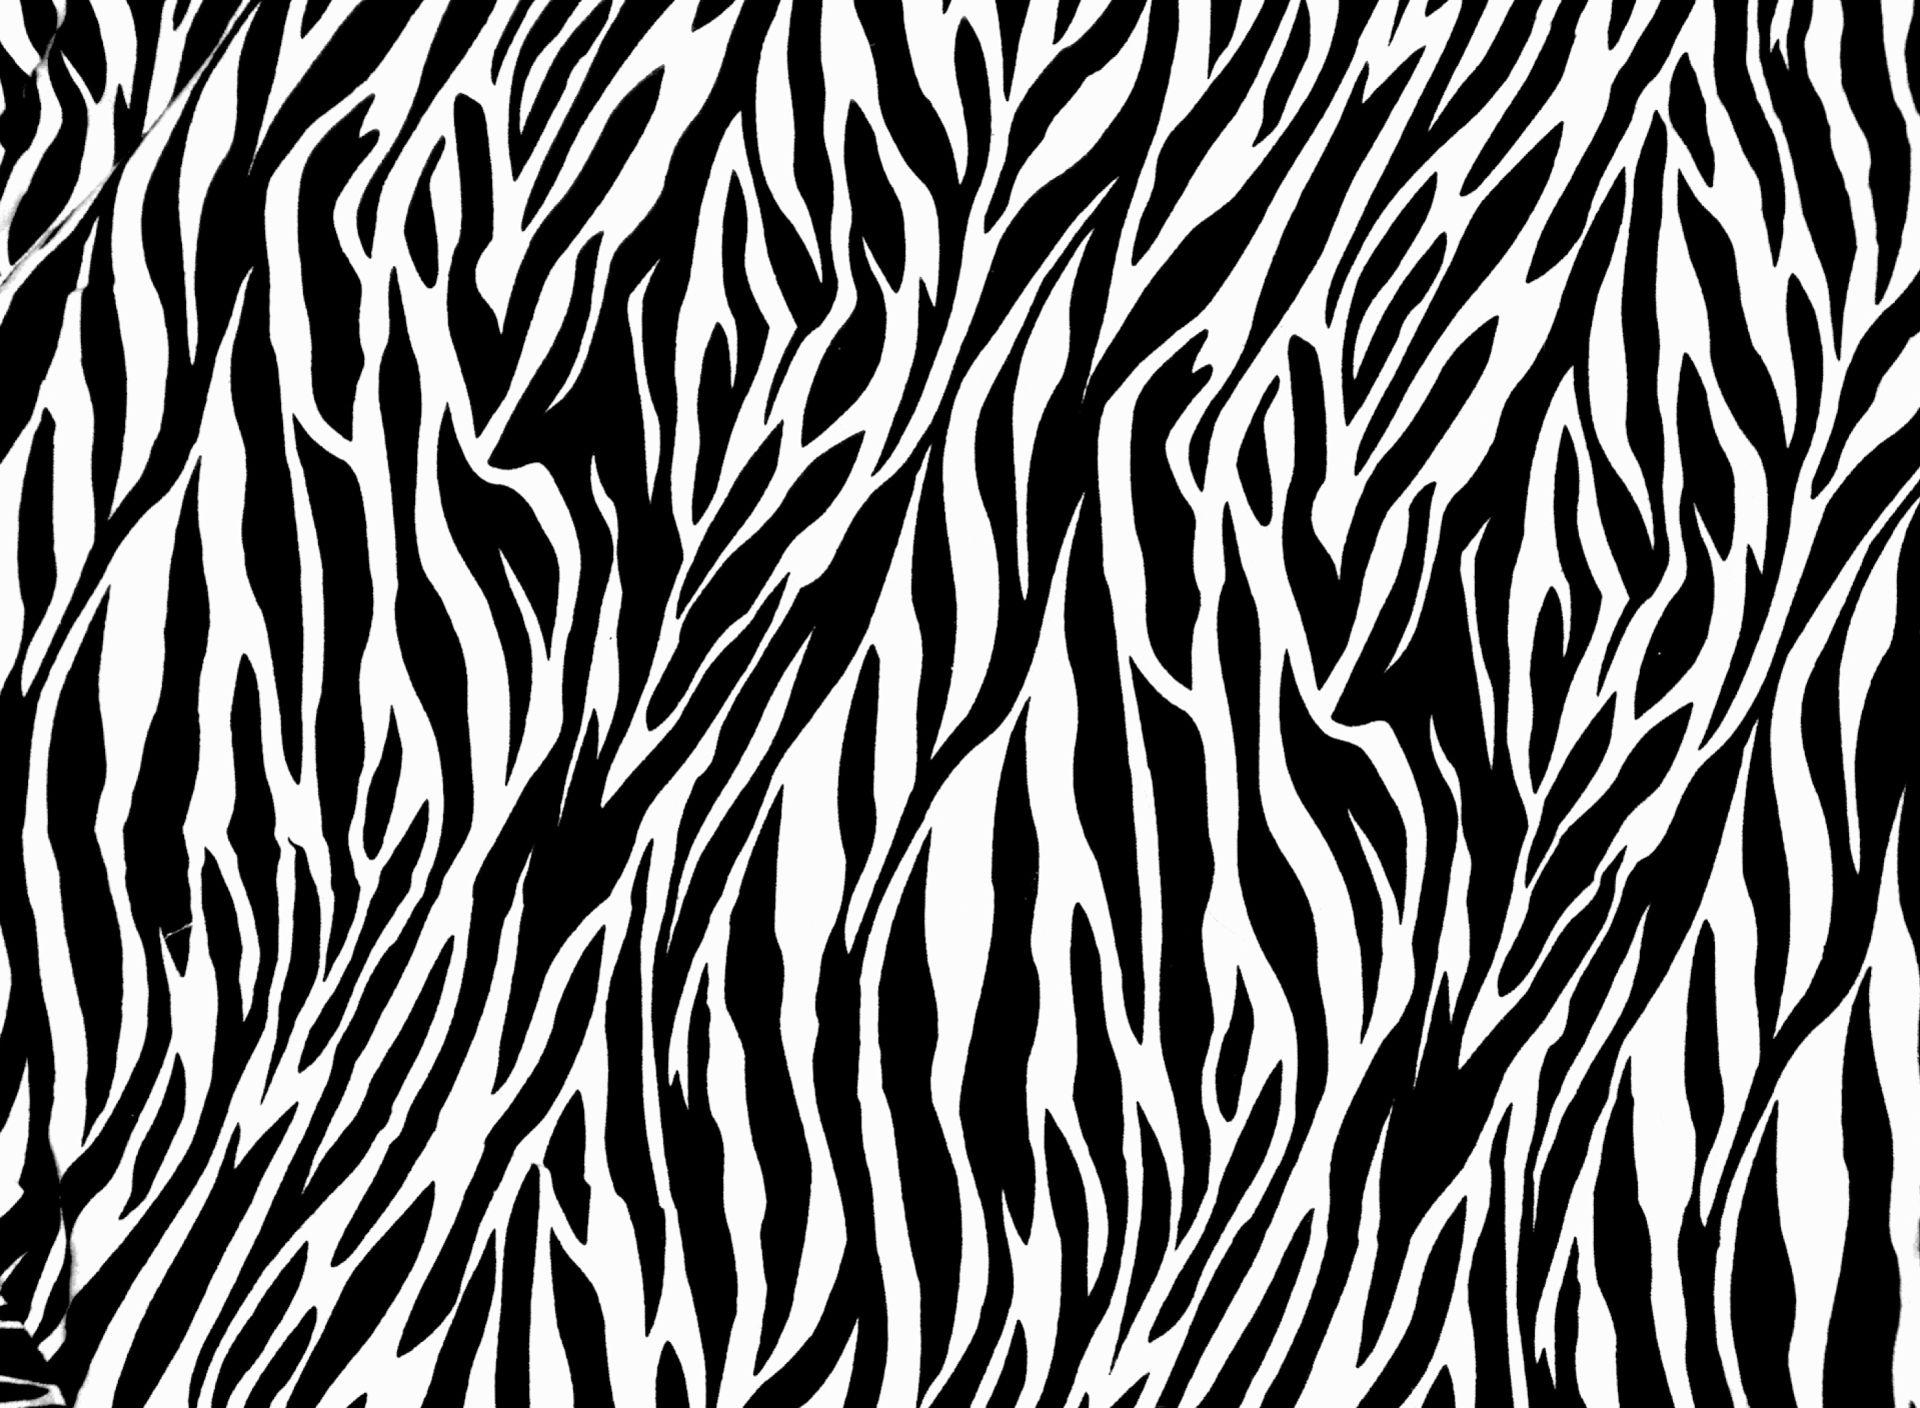 Wallpaper.wiki Zebra Print Wallpaper HD Free Download PIC WPE0043